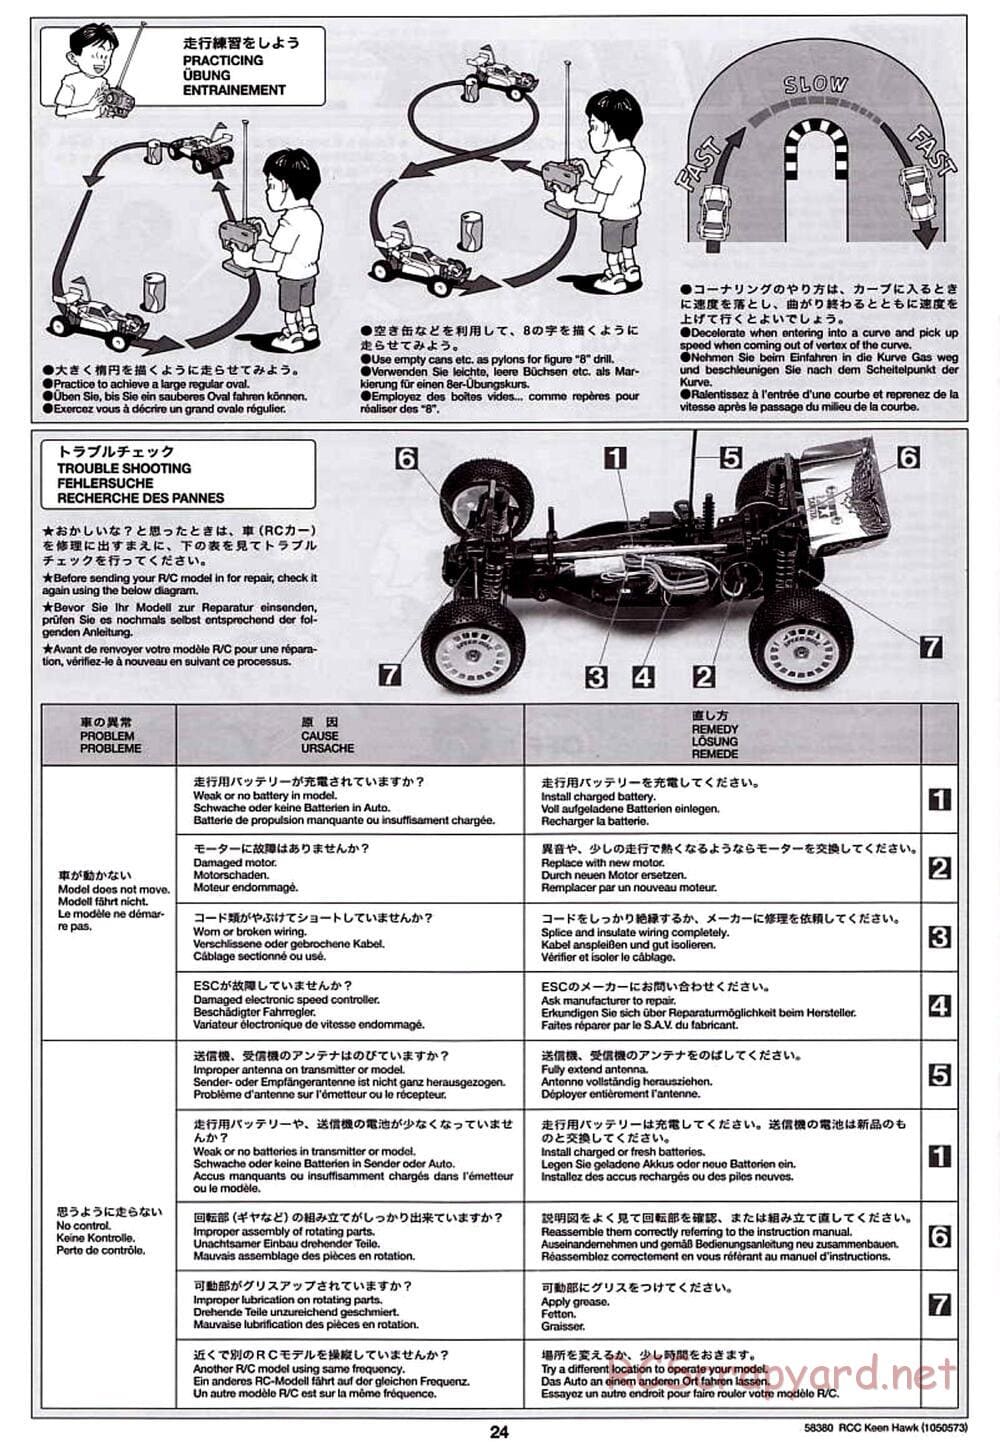 Tamiya - Keen Hawk Chassis - Manual - Page 24